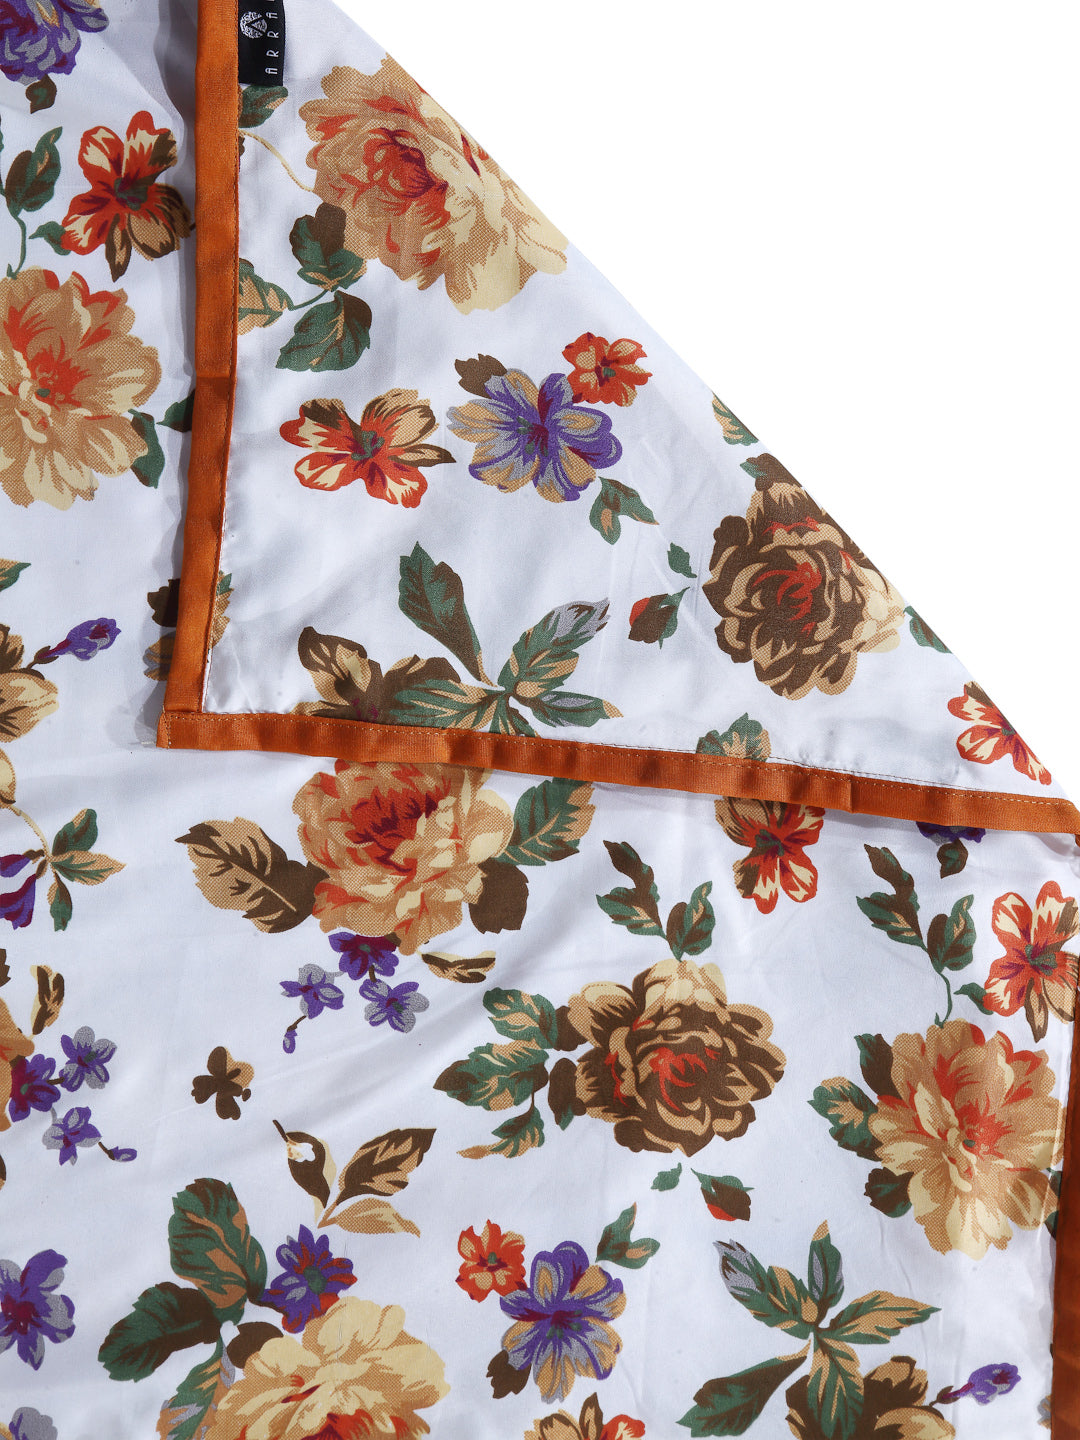 Arrabi Multi Floral TC Cotton Blend 300 GSM King Size Double Dohar (240 x 210 cm)